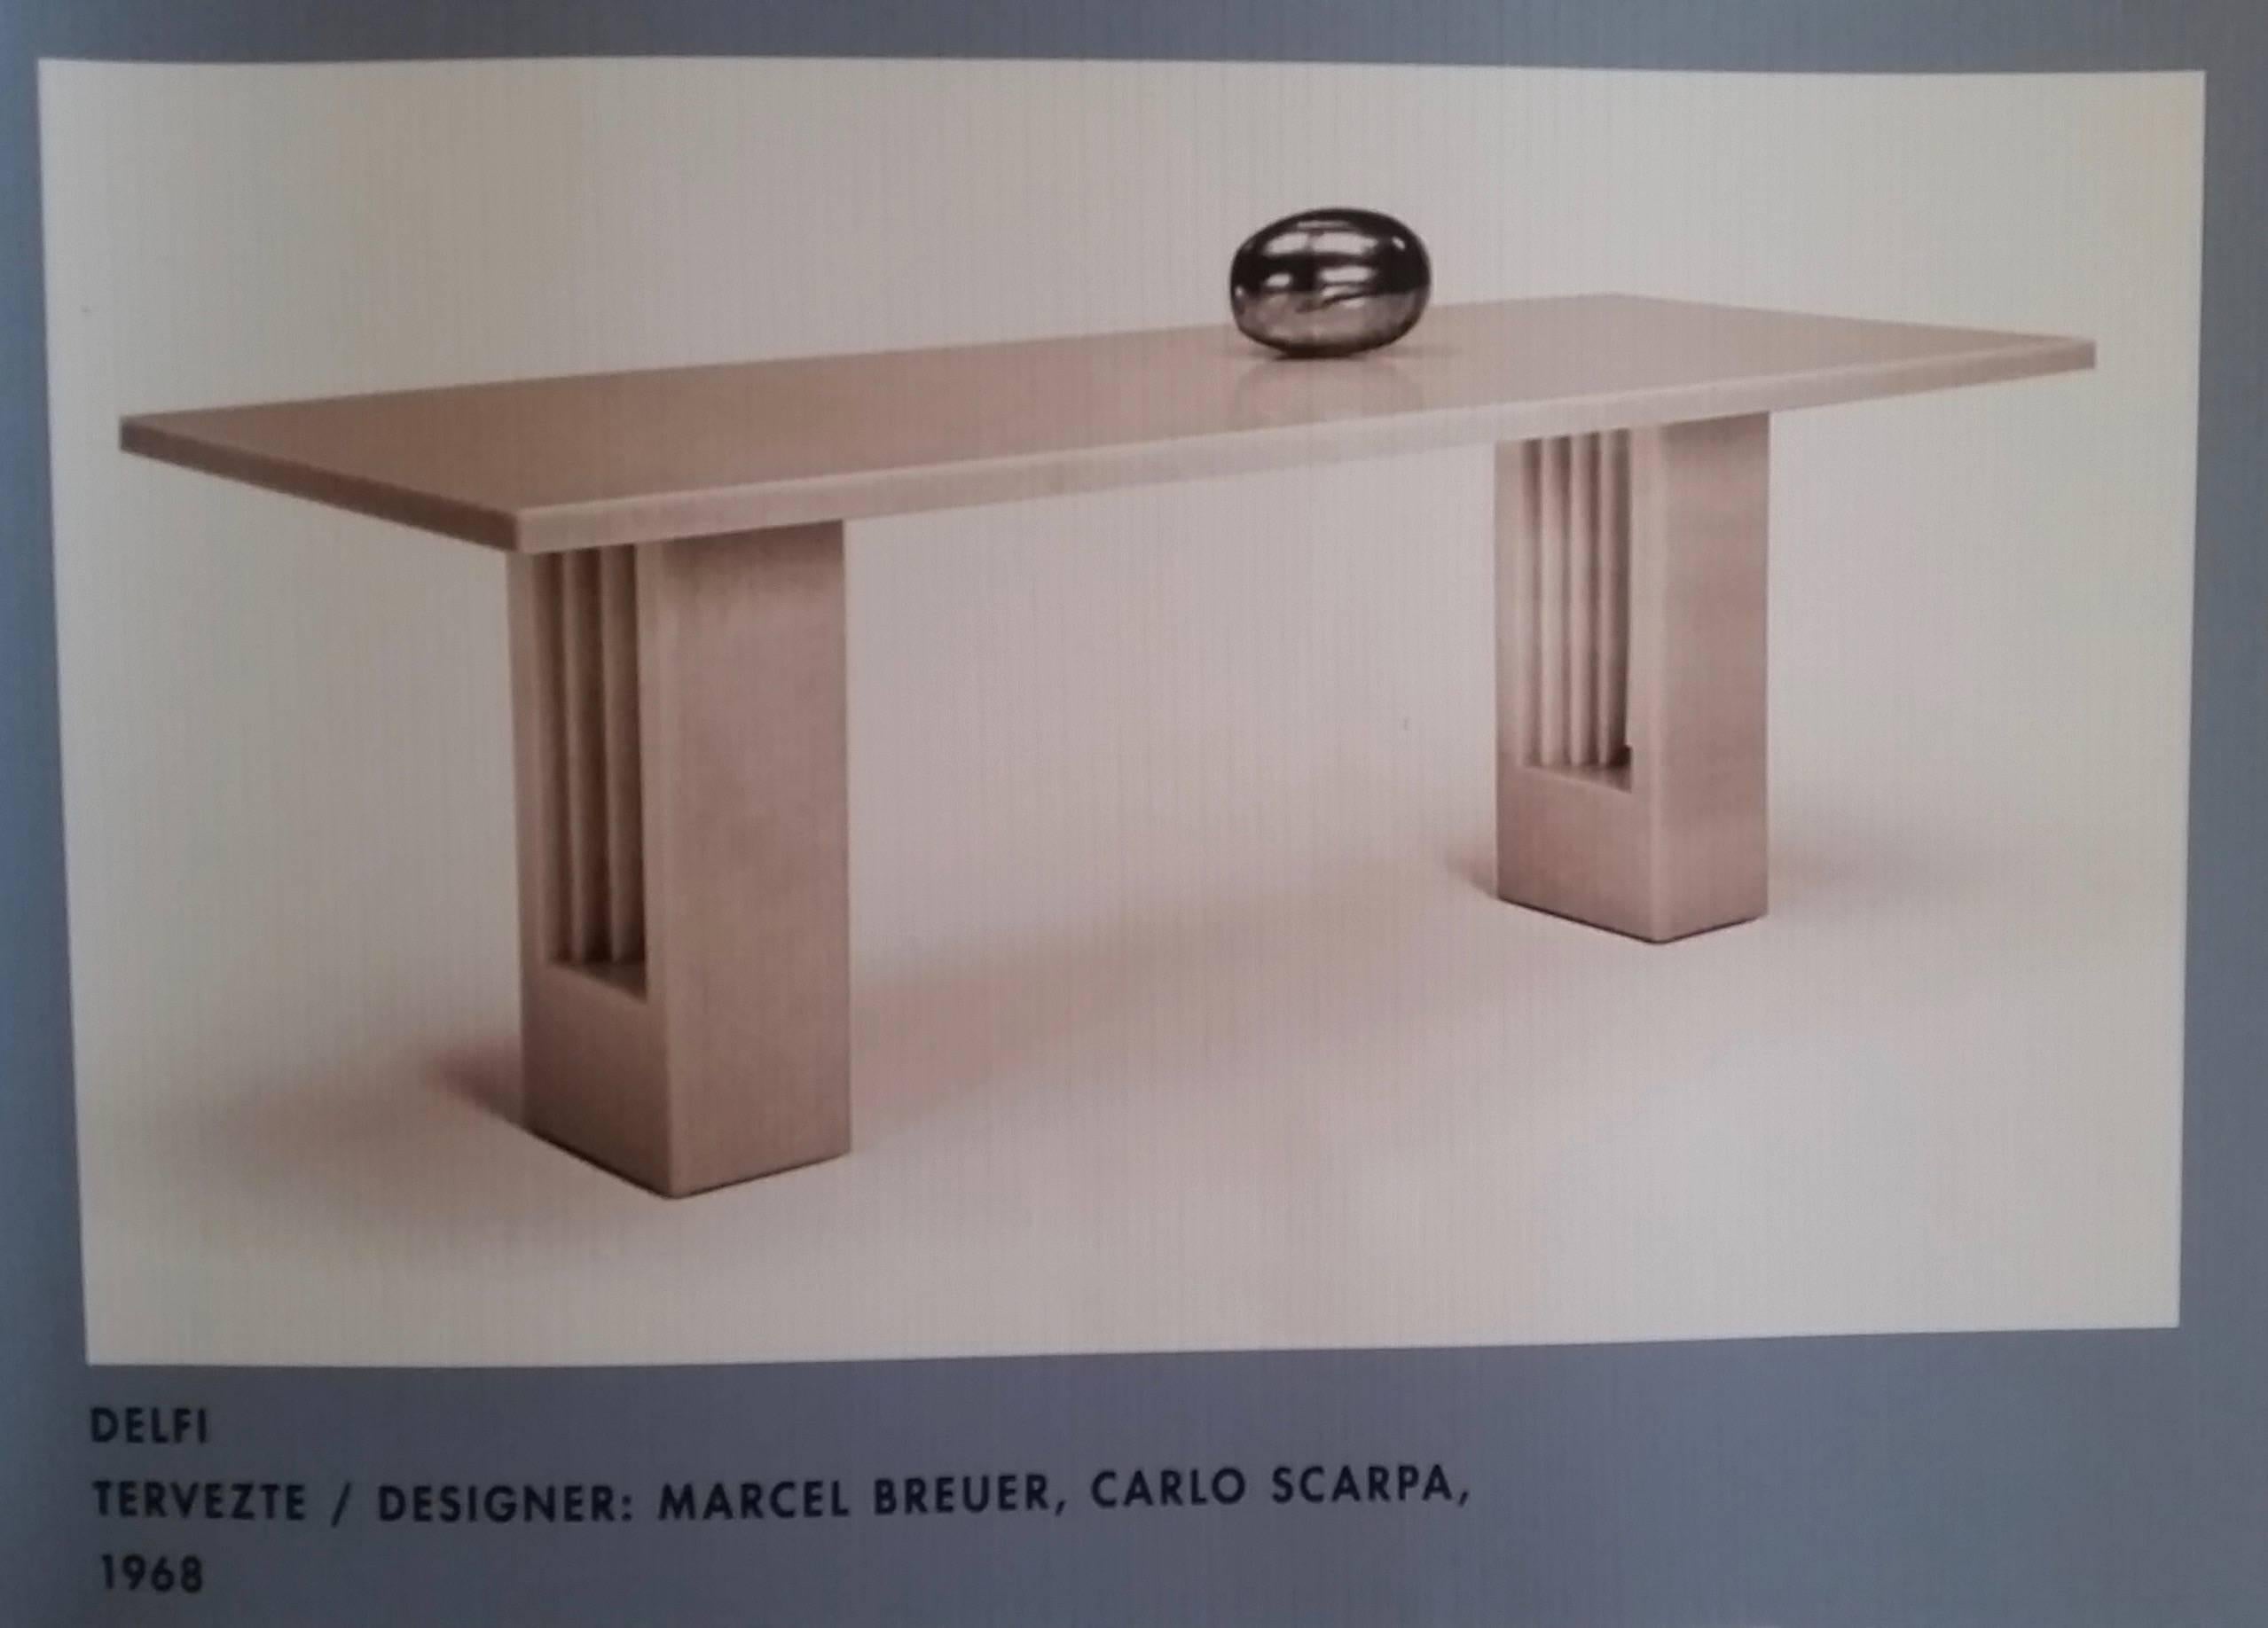 Marcel Breuer & Carlo Scarpa 1969 Delfi Black Marble Midcentury Table 4